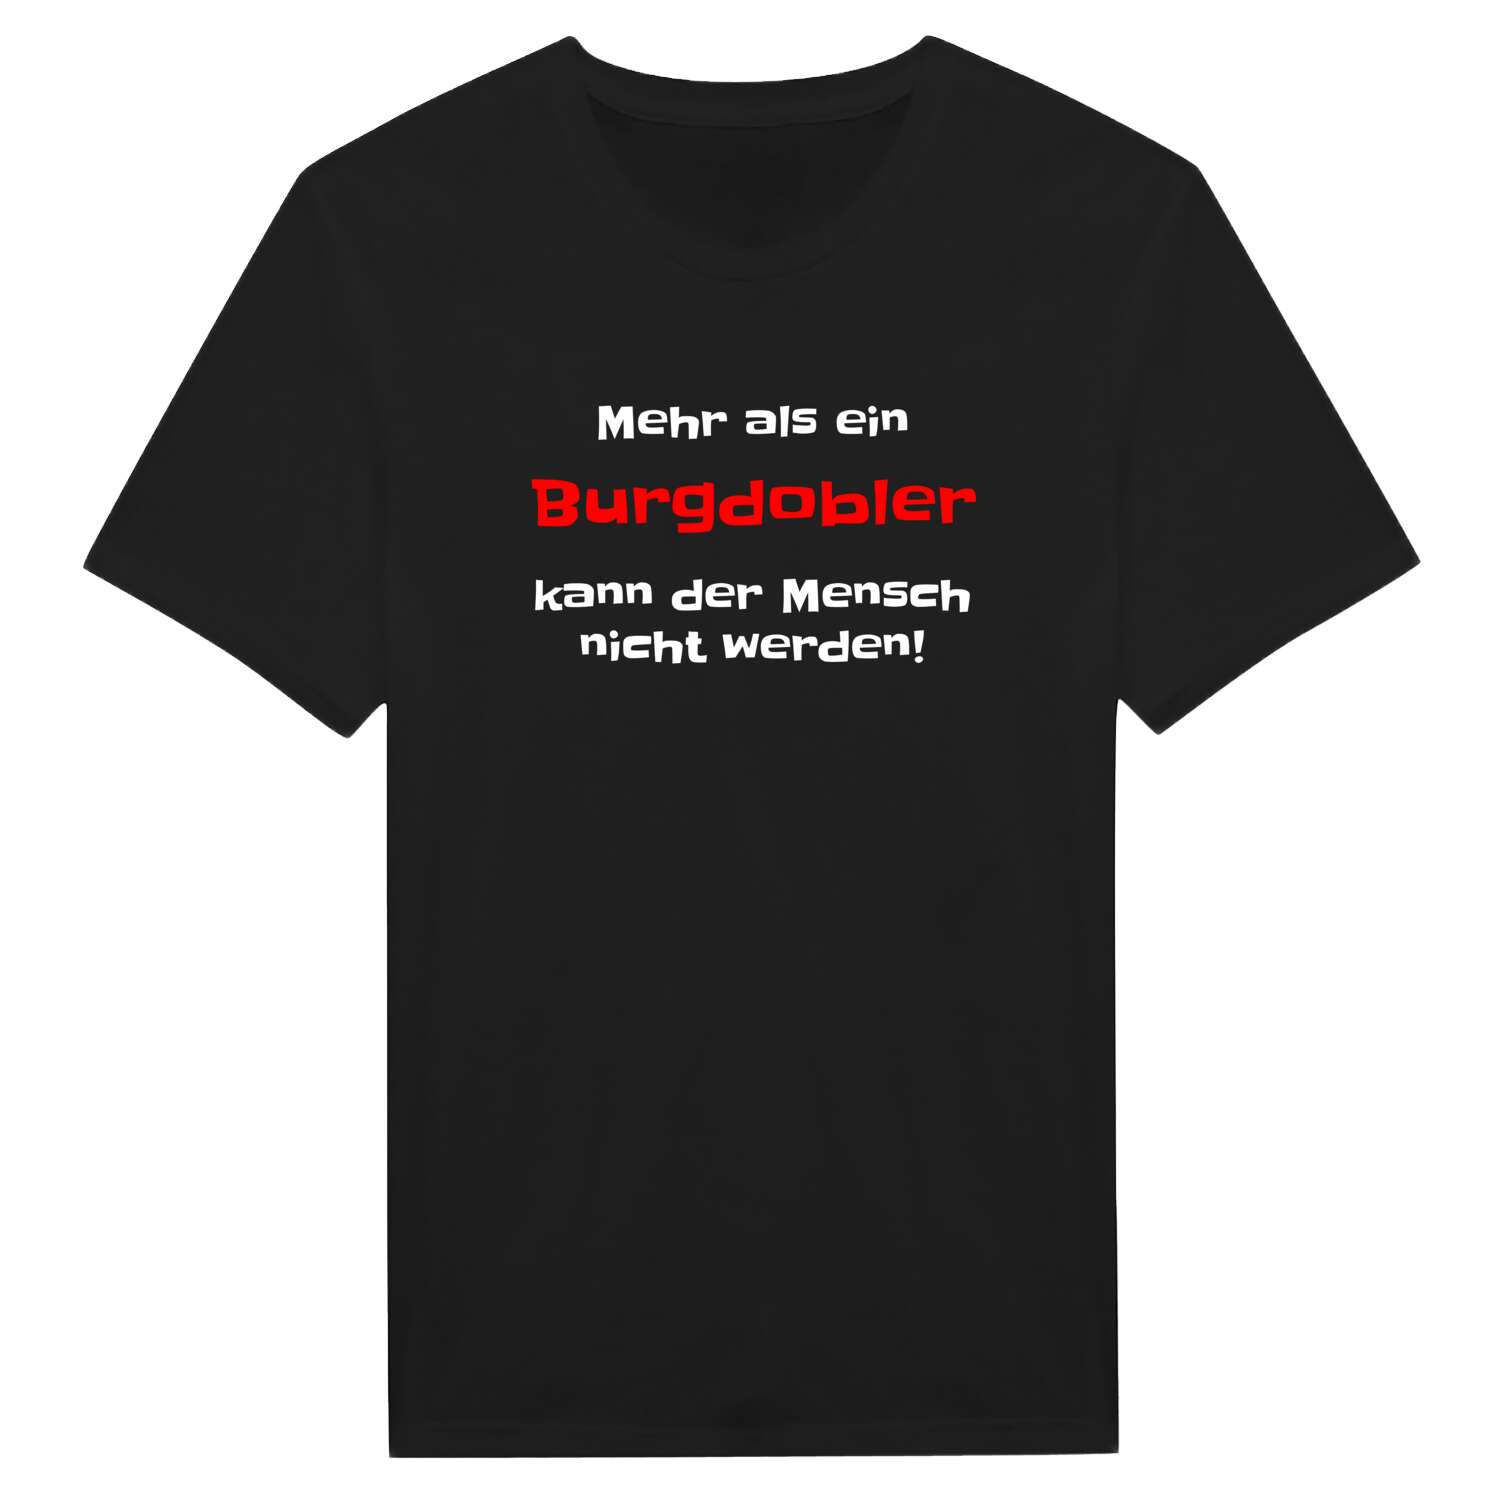 Burgdobl T-Shirt »Mehr als ein«